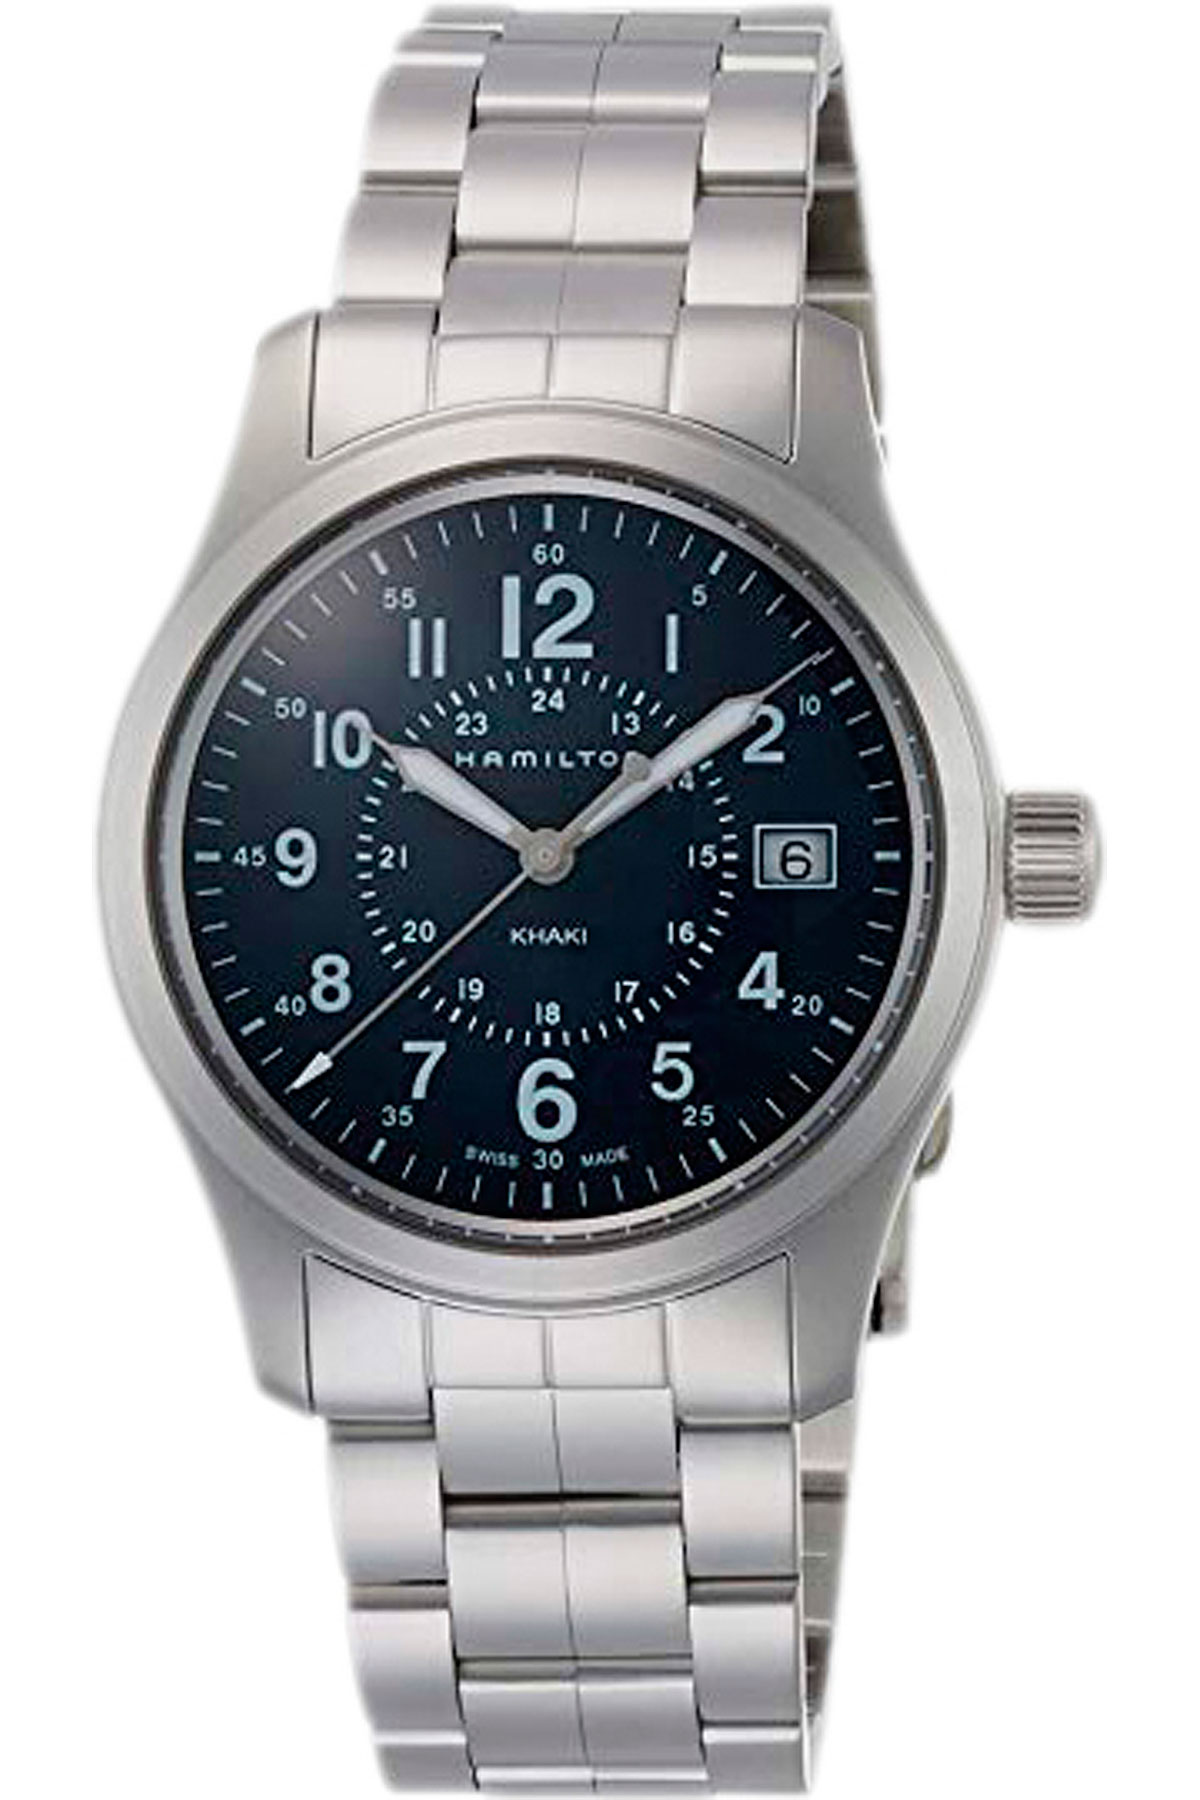 Hamilton Uhr für Herren, Chronometer, Zeitmesser Günstig im Sale, Silber, Rostfreier Stahl, 2017